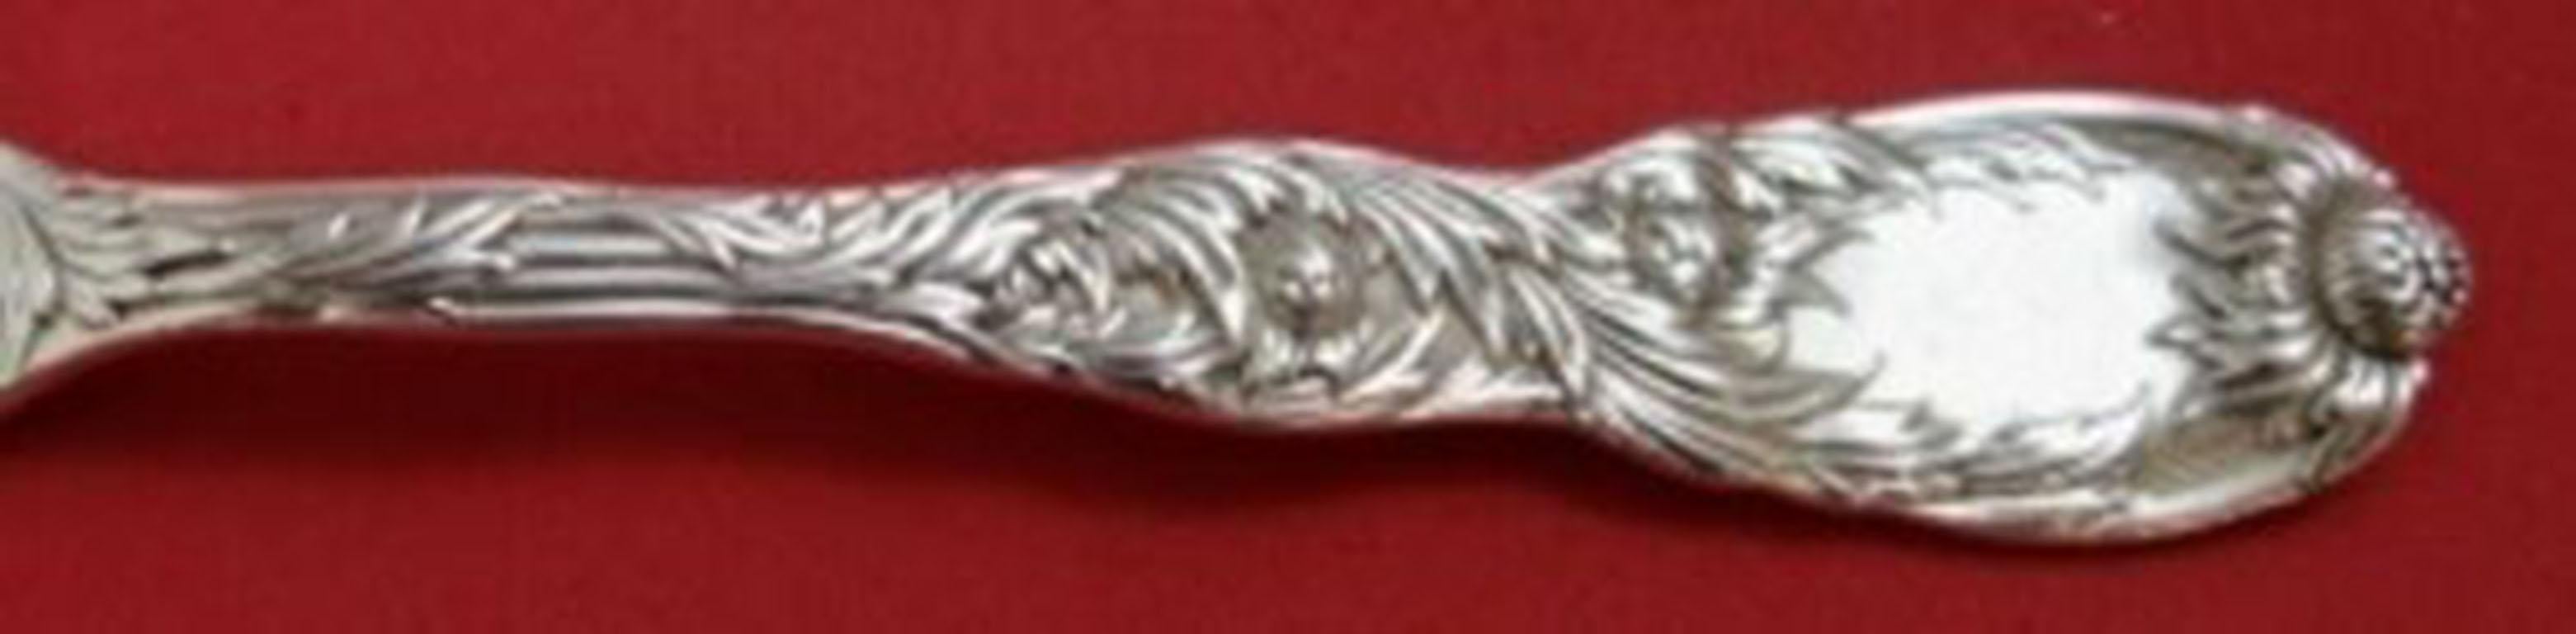 Sterling silver demitasse spoon, 4